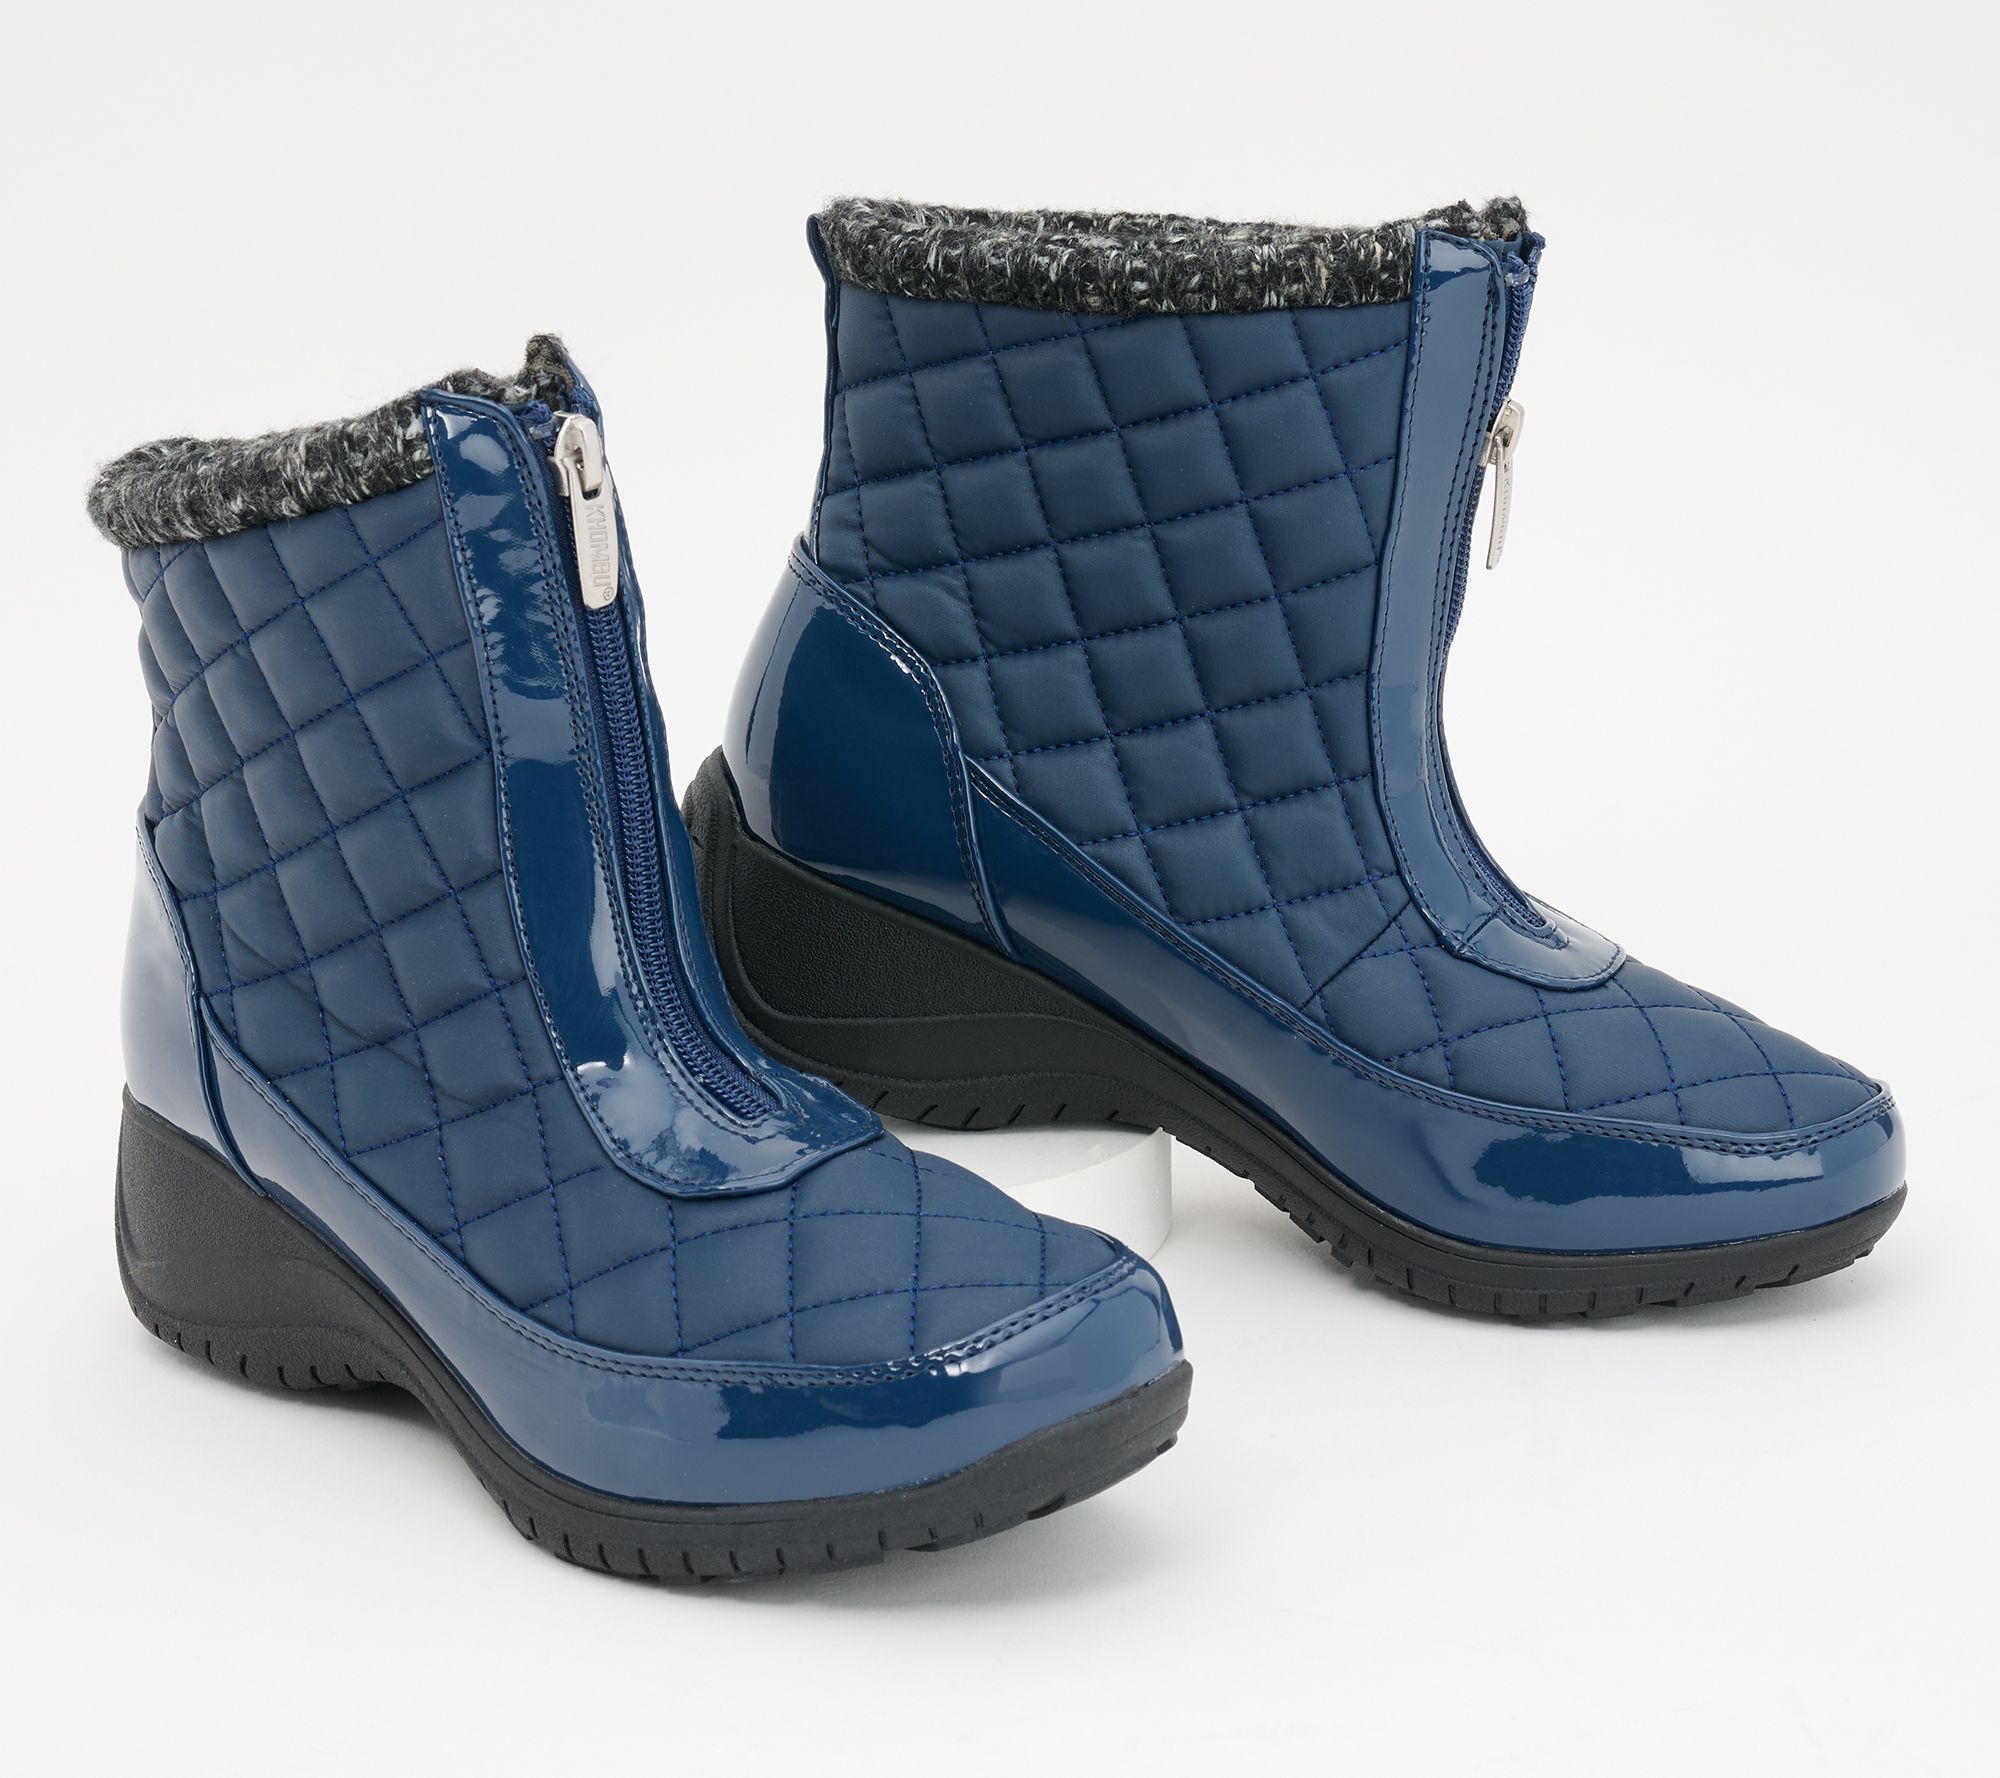 Khombu Women's Shoe Sz 7 (US Women's) Waterproof Front-Zip Winter Blue A612618